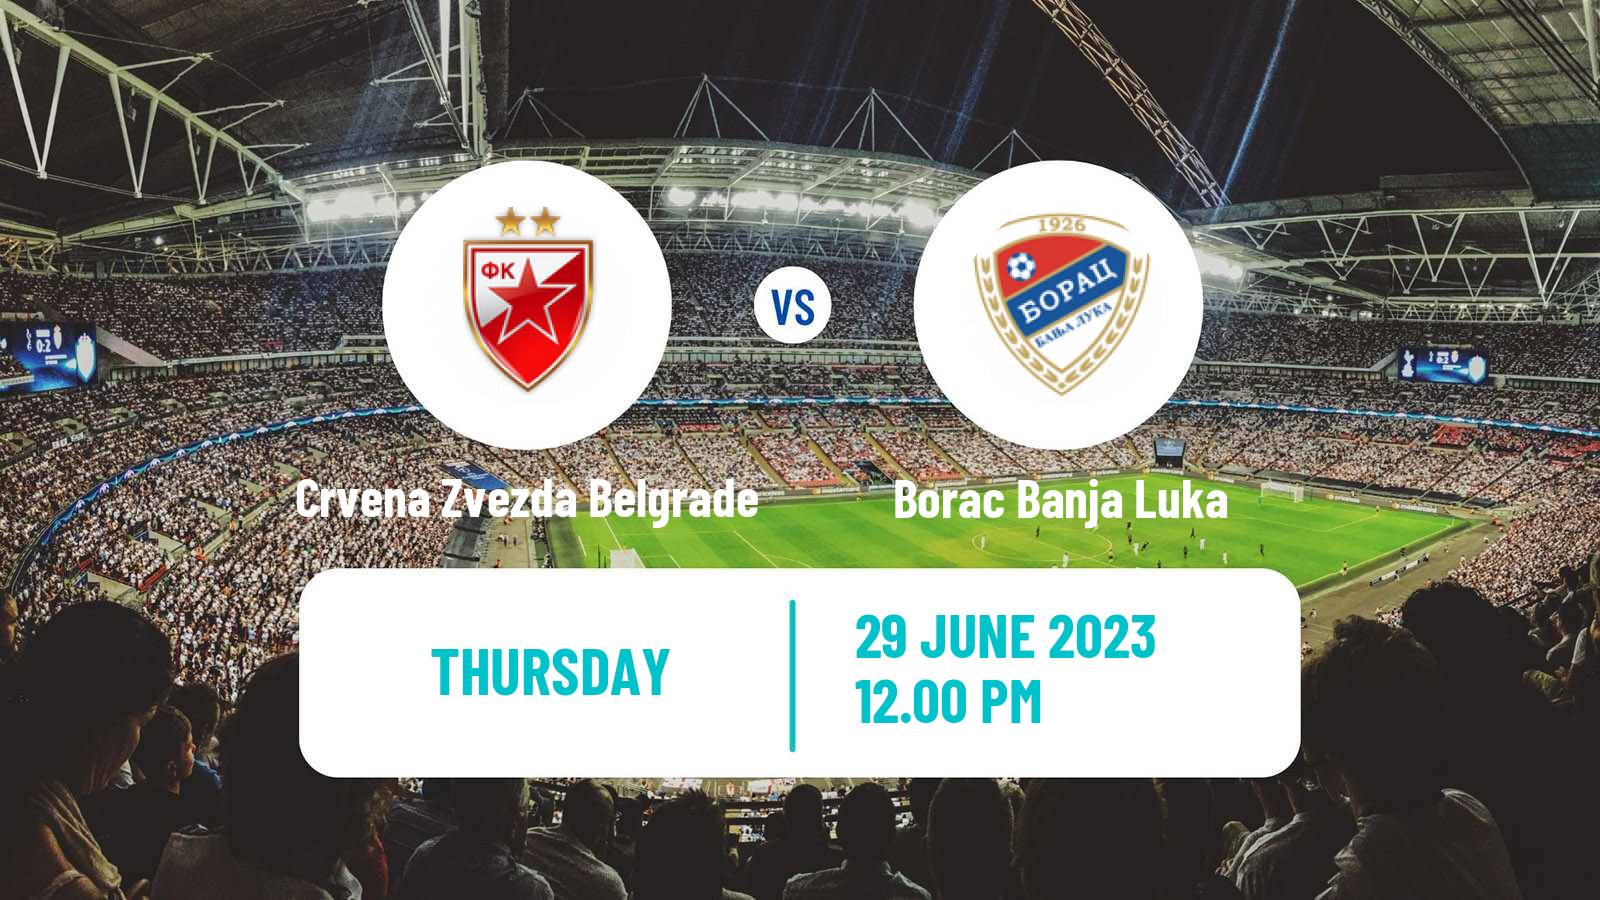 Soccer Club Friendly Crvena Zvezda Belgrade - Borac Banja Luka